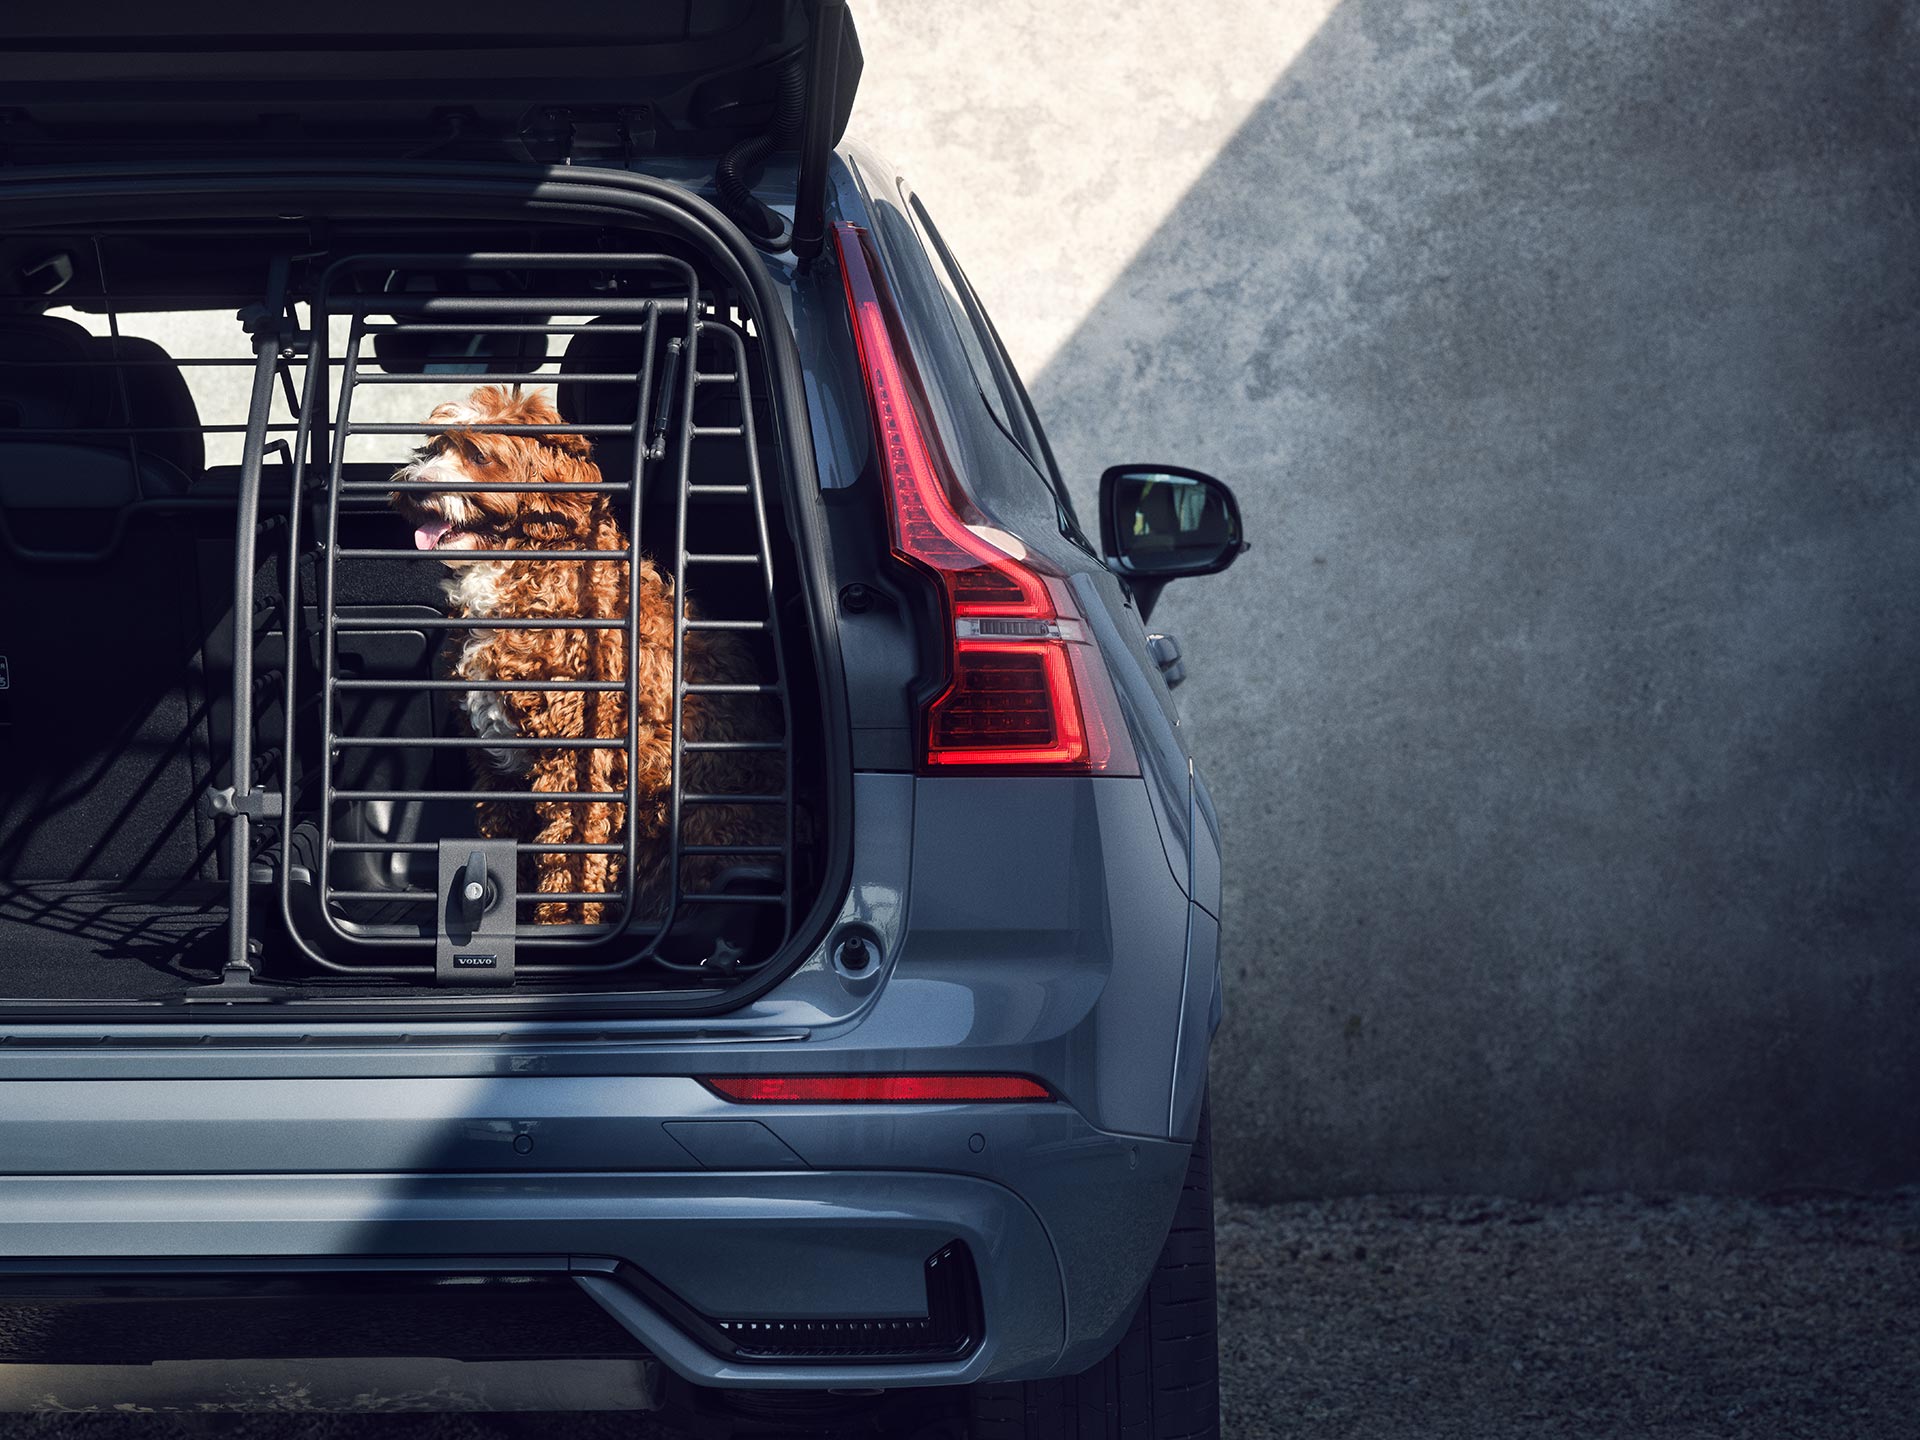 En kopparfärgad hund sitter i en säker hundbur. Det är ett tillbehör som är speciellt utformat för säkerhet och komfort för husdjur i Volvobilar.